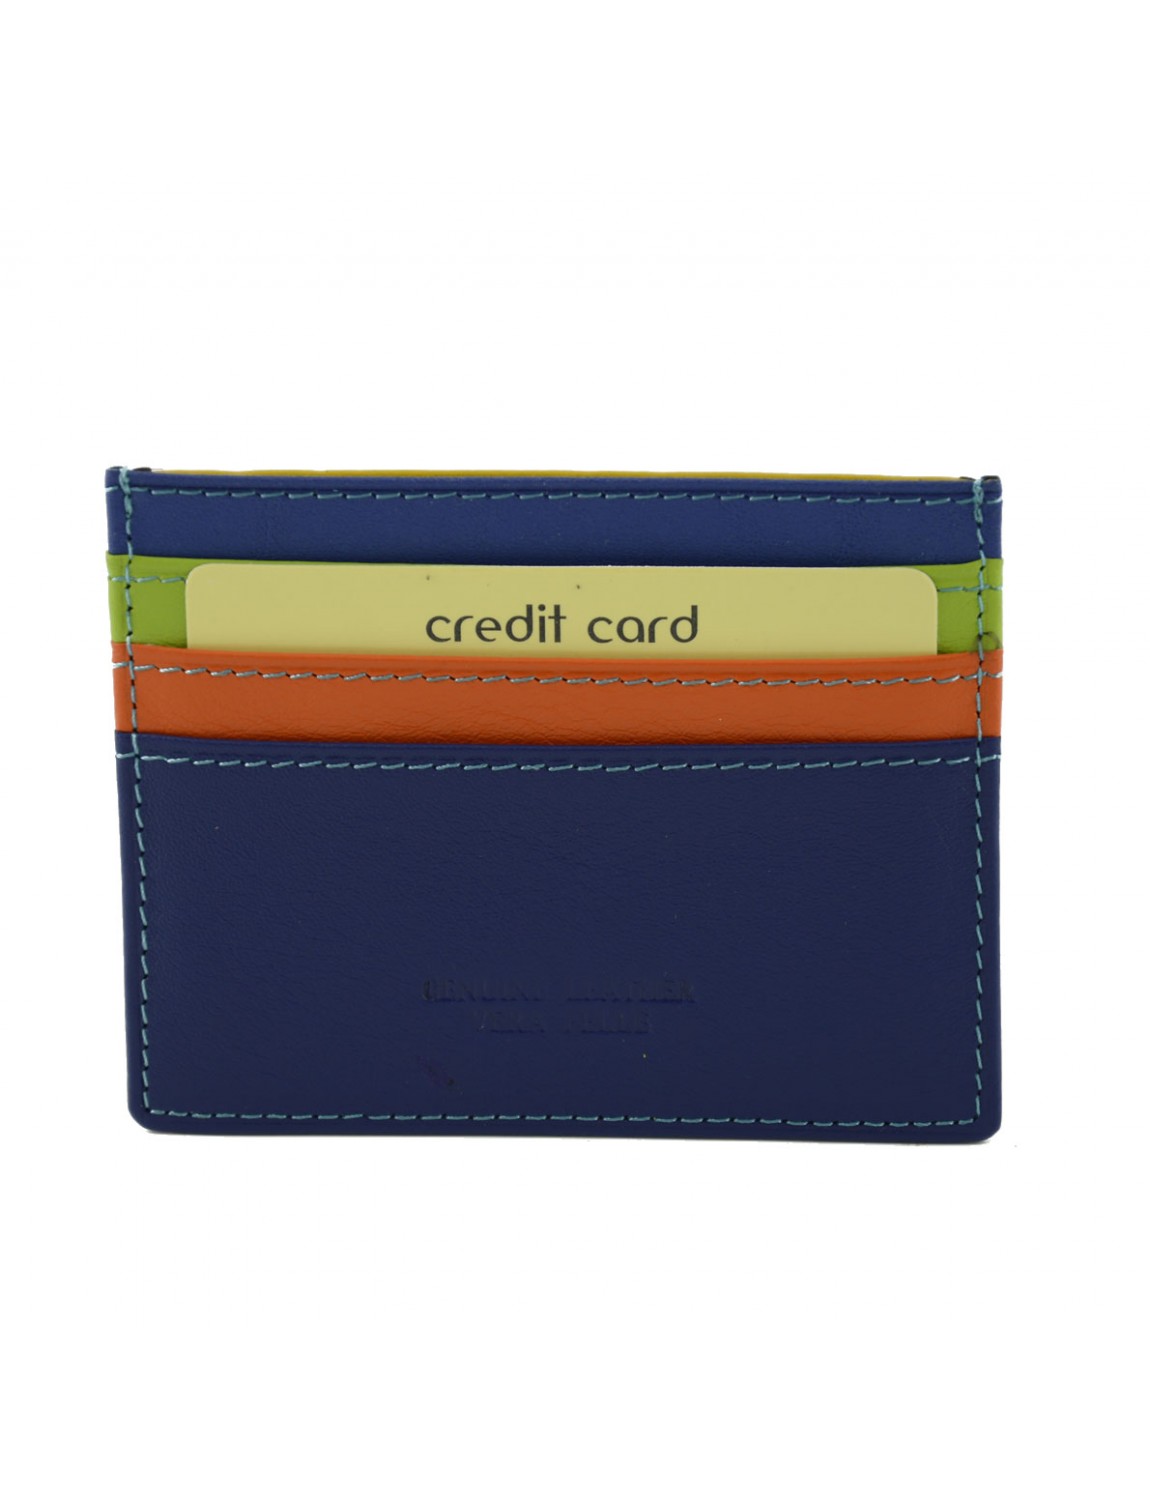 Porte-cartes rétro en PU, 24 cartes de crédit, Bus, banque